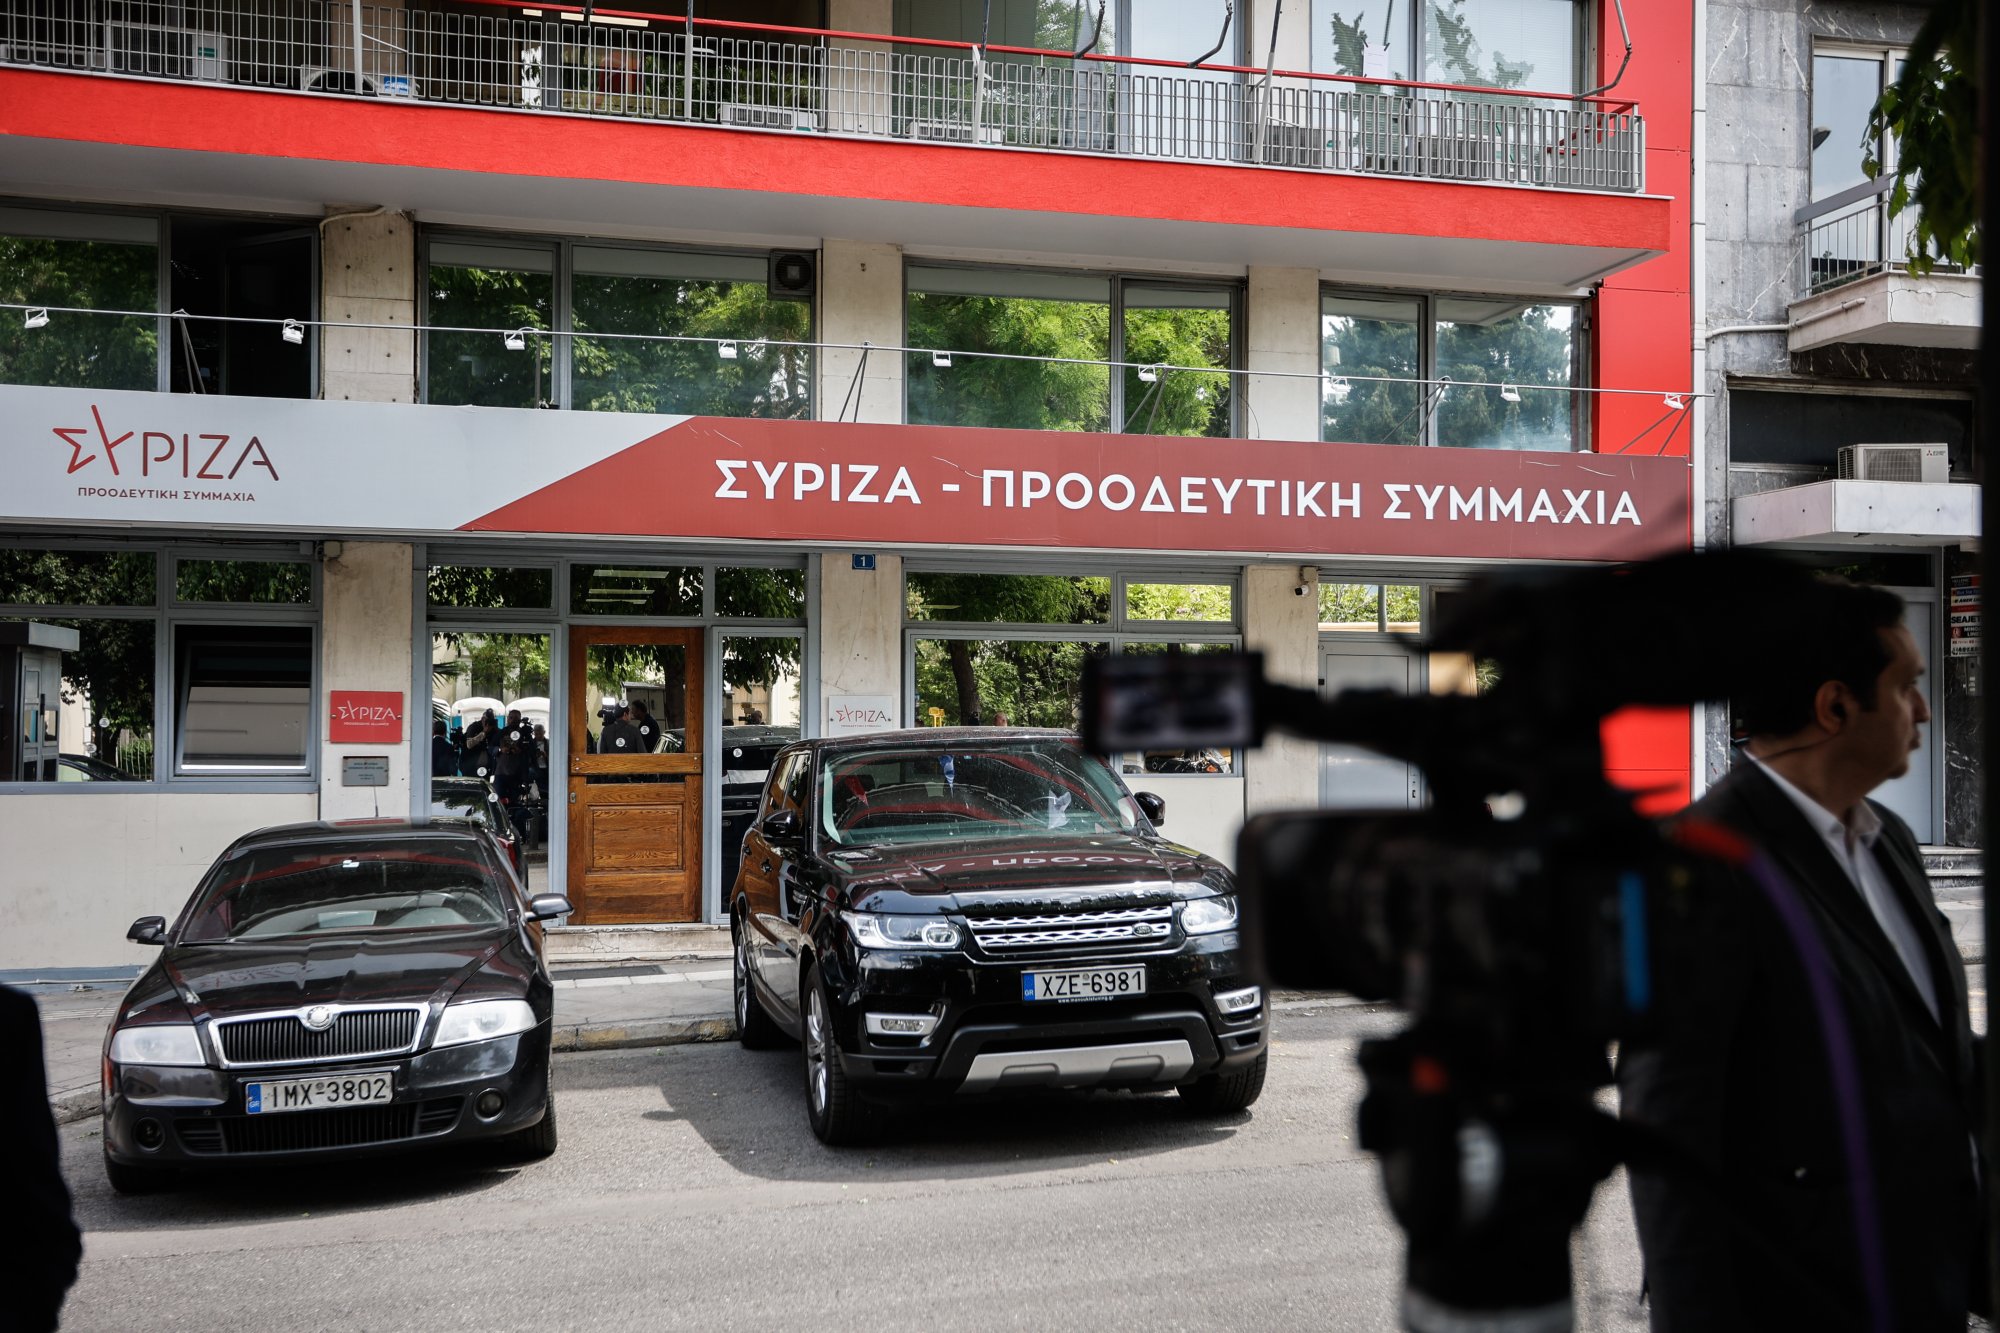 Ερωτηματολόγιο: Ραγδαίες εξελίξεις στον ΣΥΡΙΖΑ - Έκτακτη συνεδρίαση της Πολιτικής Γραμματείας